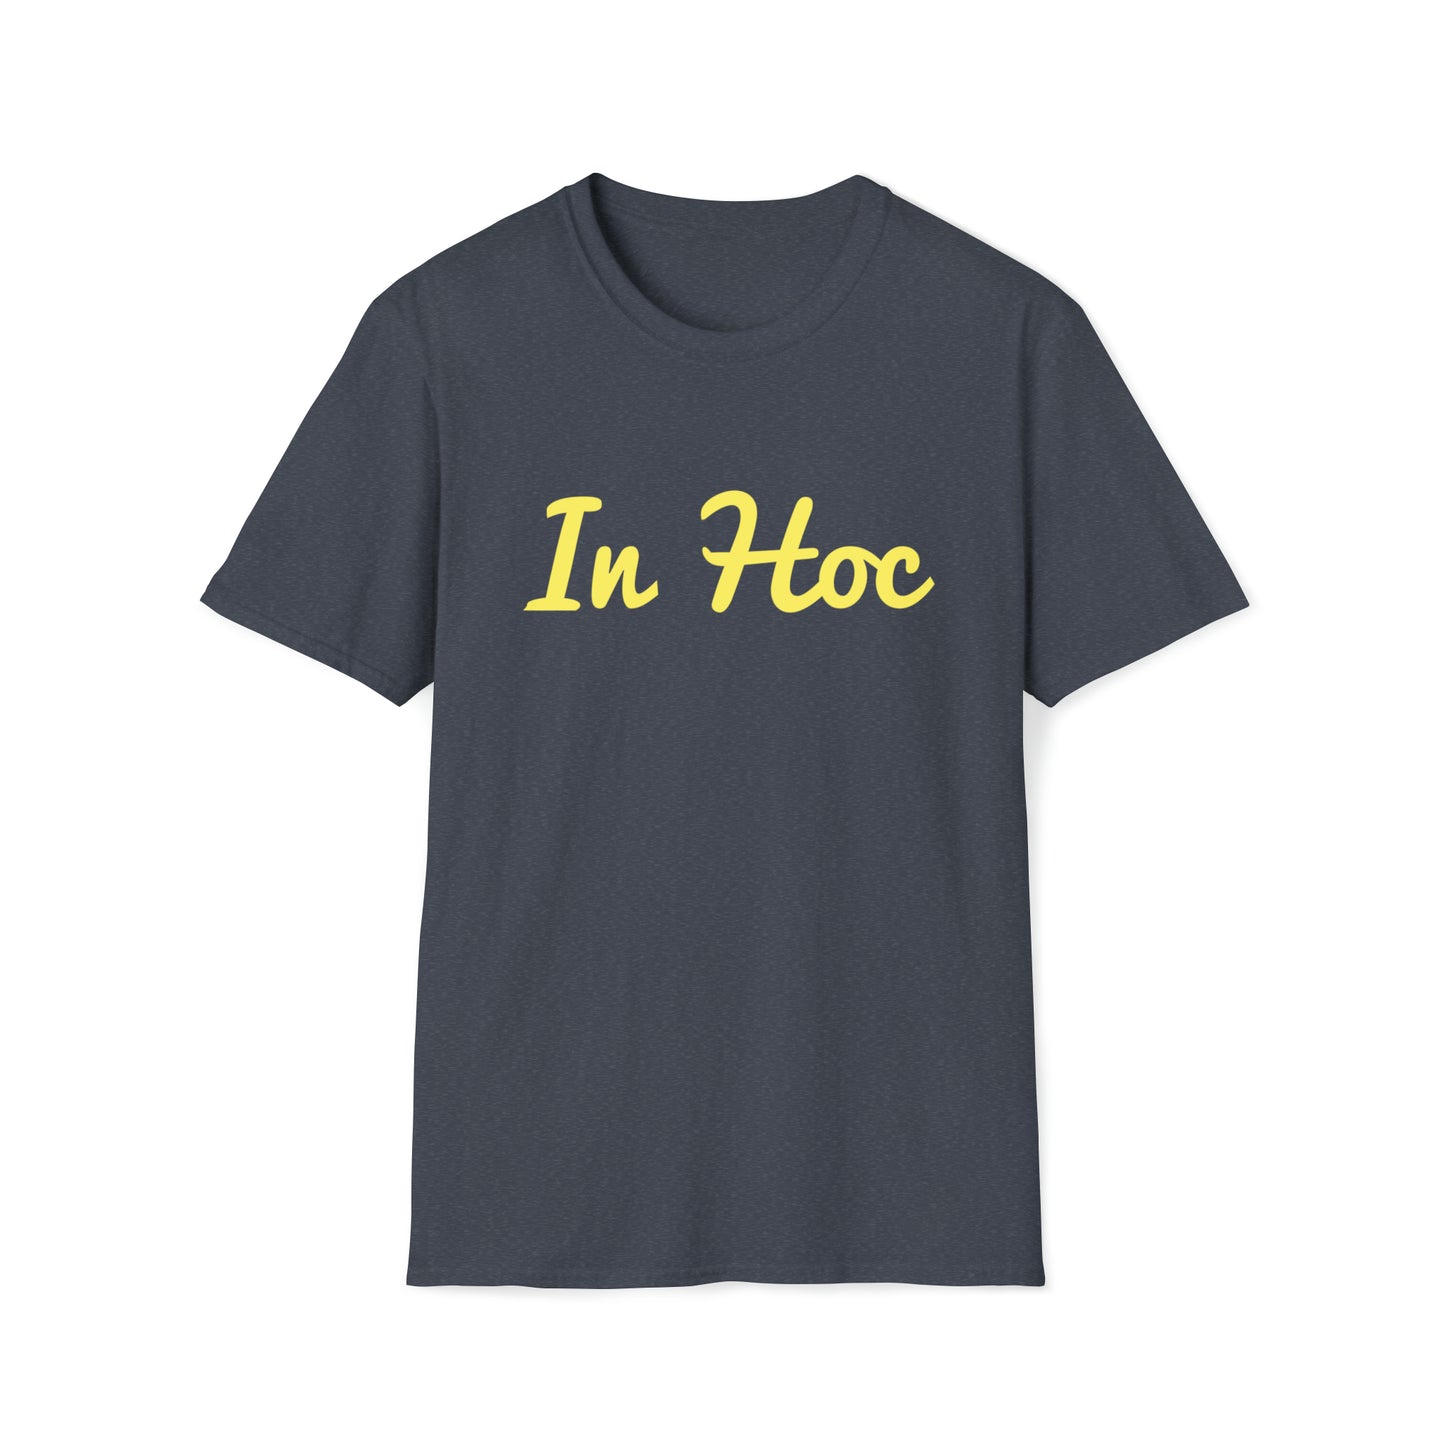 In Hoc - T-Shirt